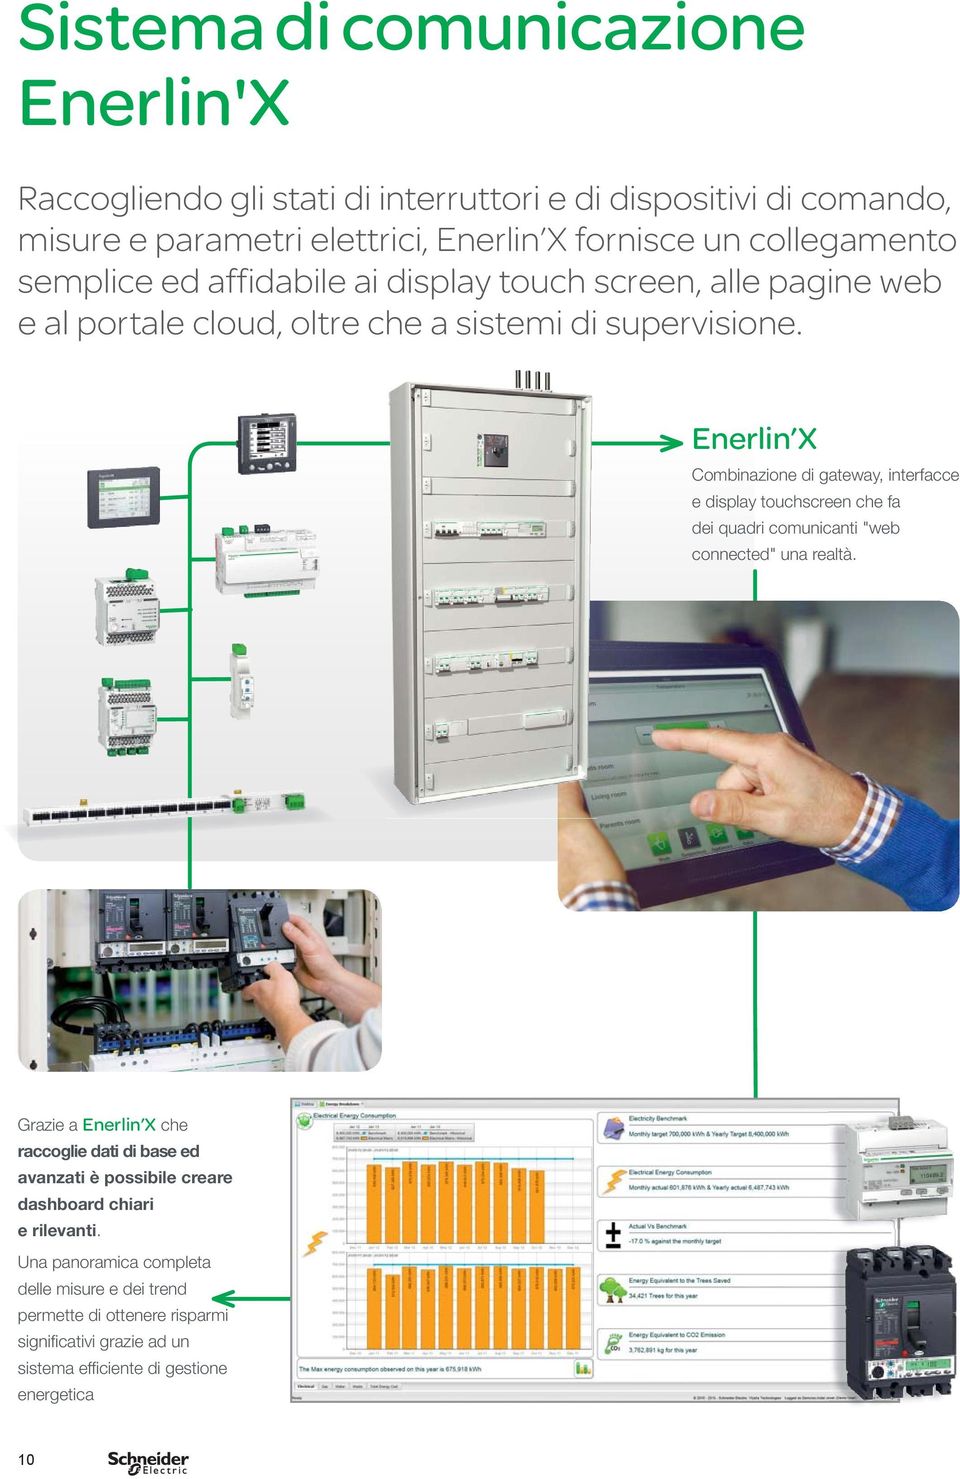 Enerlin X Combinazione di gateway, interfacce e display touchscreen che fa dei quadri comunicanti "web connected" una realtà.